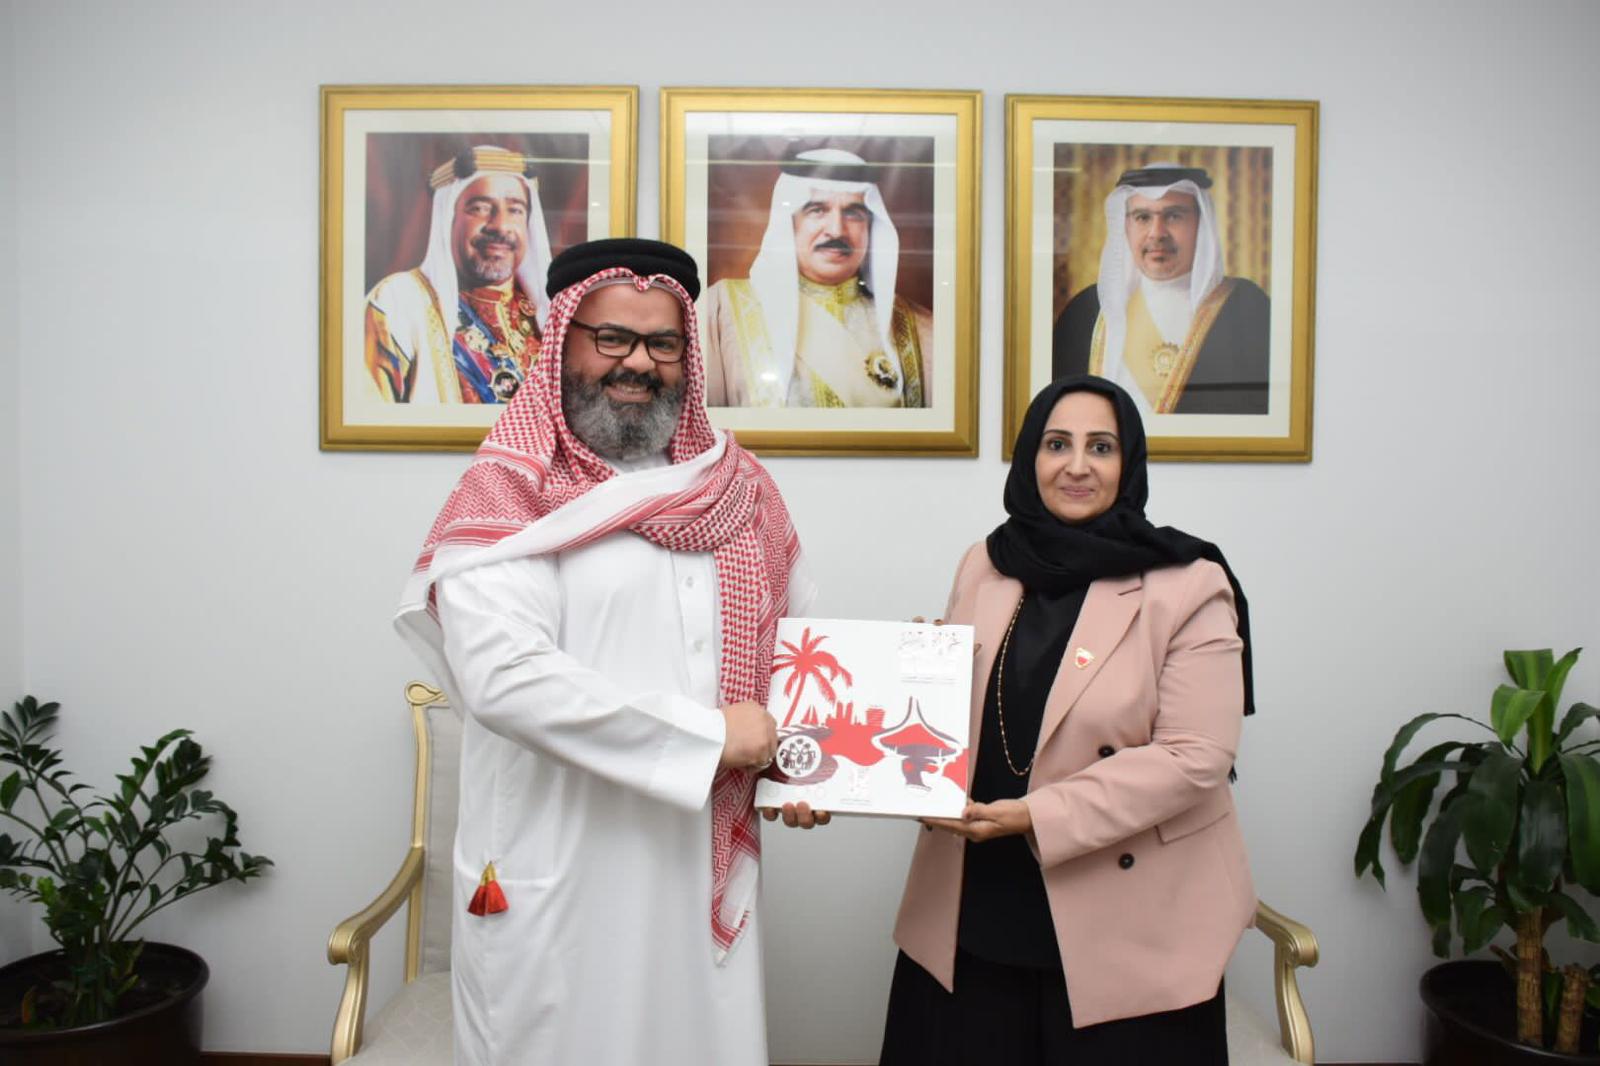 وزيرة الصحة تتسلم نسخة من كتاب "محبوبتي البحرين" للدكتور فهد الشهابي